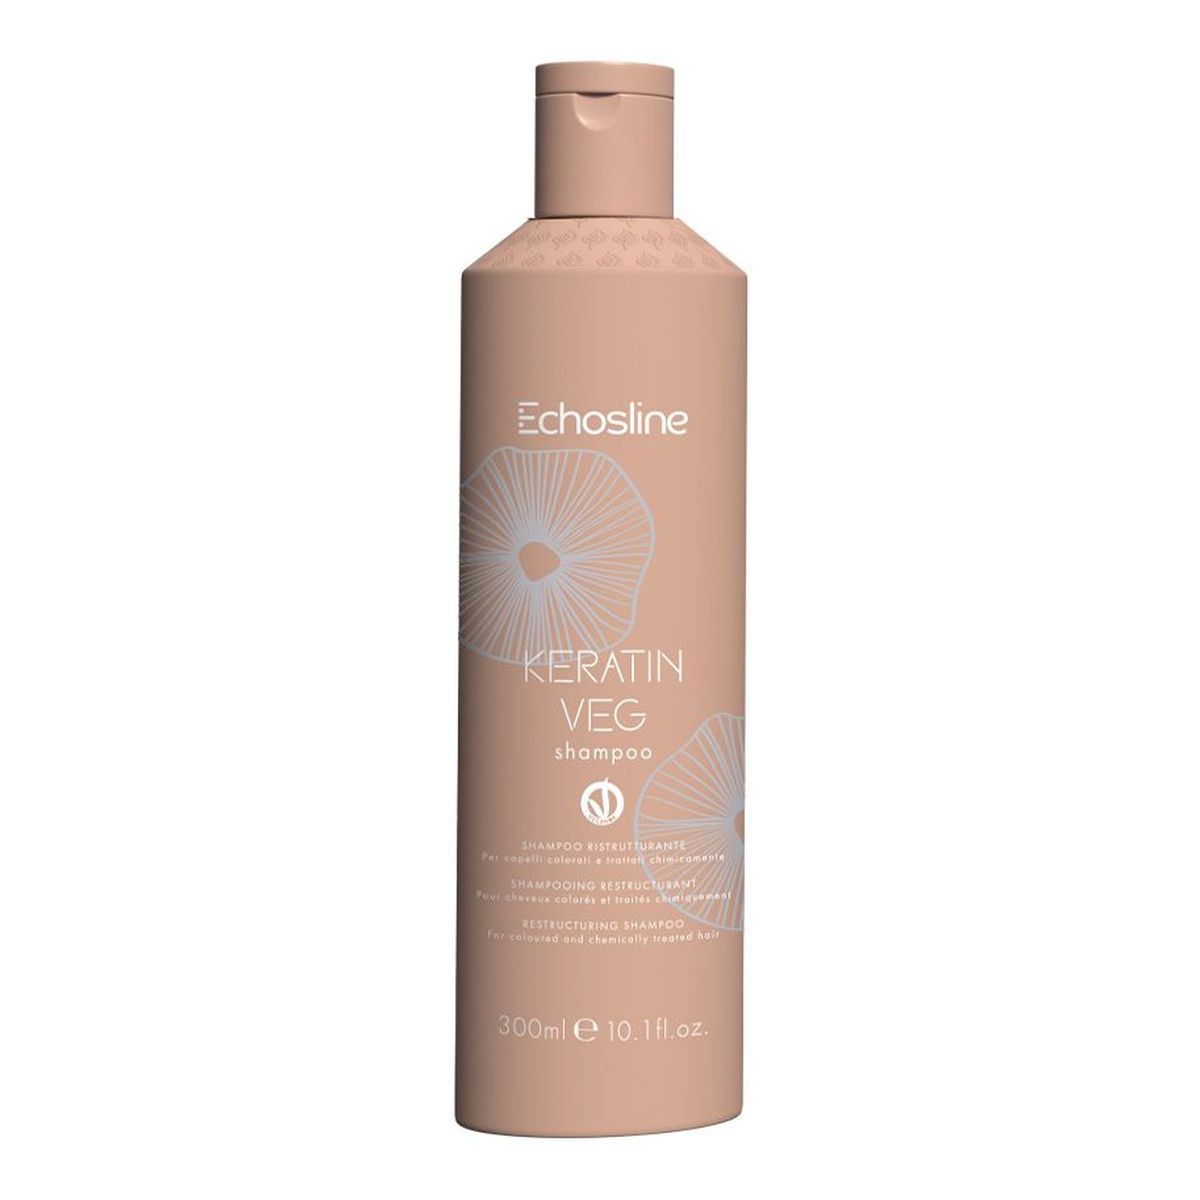 Echosline Keratin veg regenerujący szampon do włosów 300ml